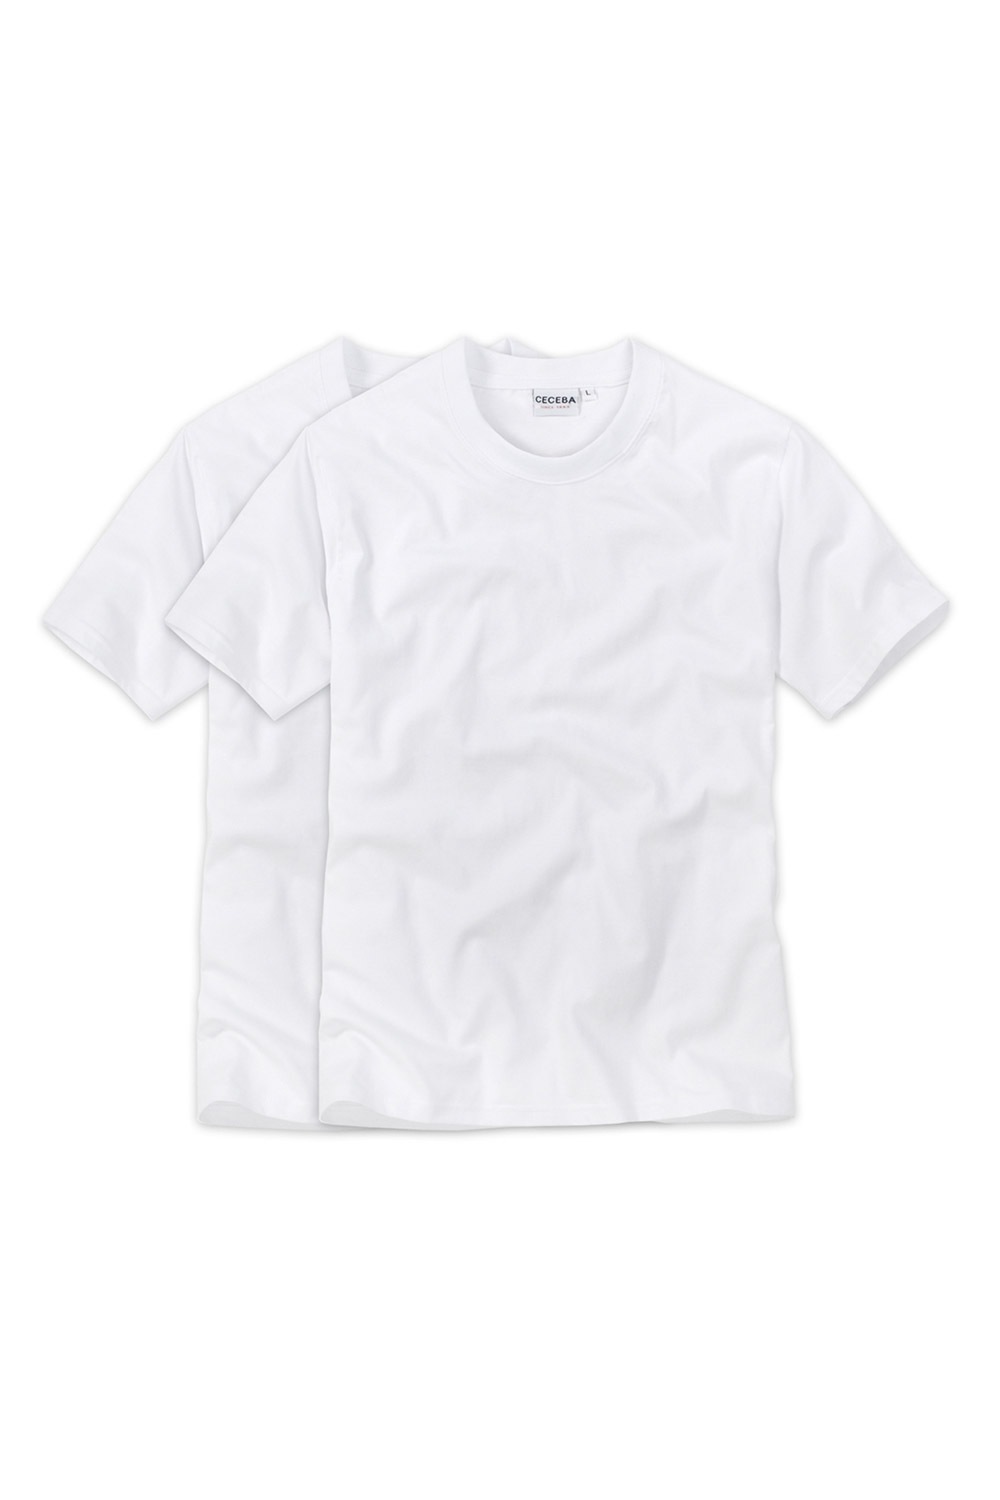 White férfi póló V alakú nyakkivágással 2 db-os csomagolásban fotója